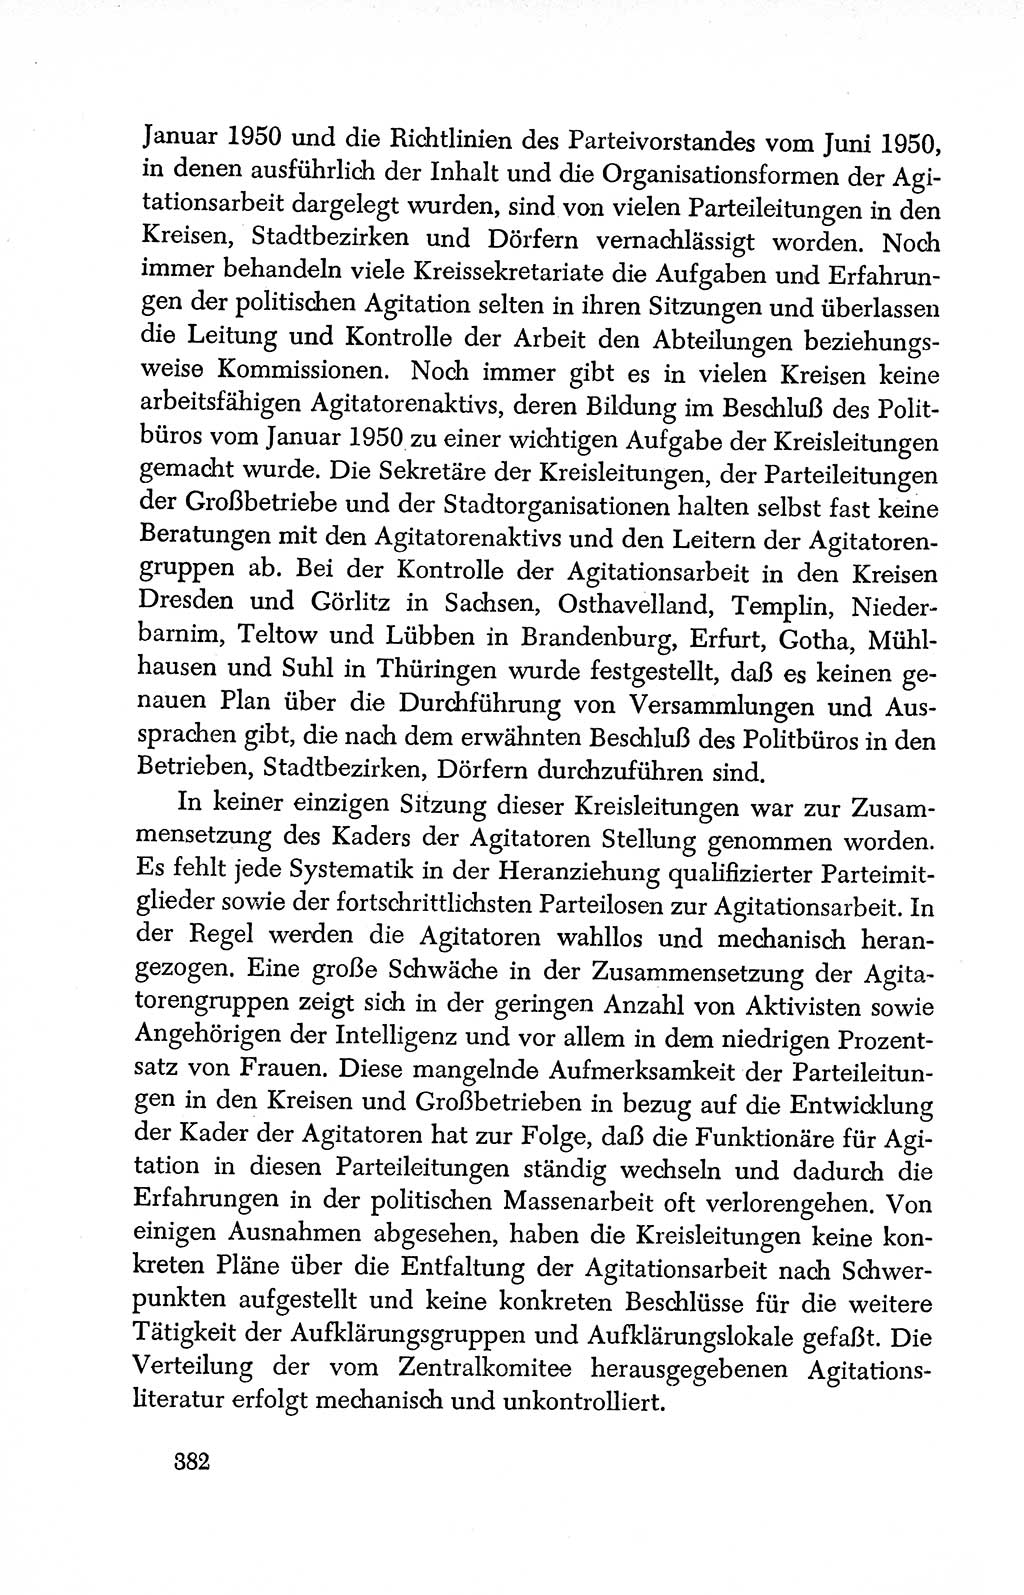 Dokumente der Sozialistischen Einheitspartei Deutschlands (SED) [Deutsche Demokratische Republik (DDR)] 1950-1952, Seite 382 (Dok. SED DDR 1950-1952, S. 382)